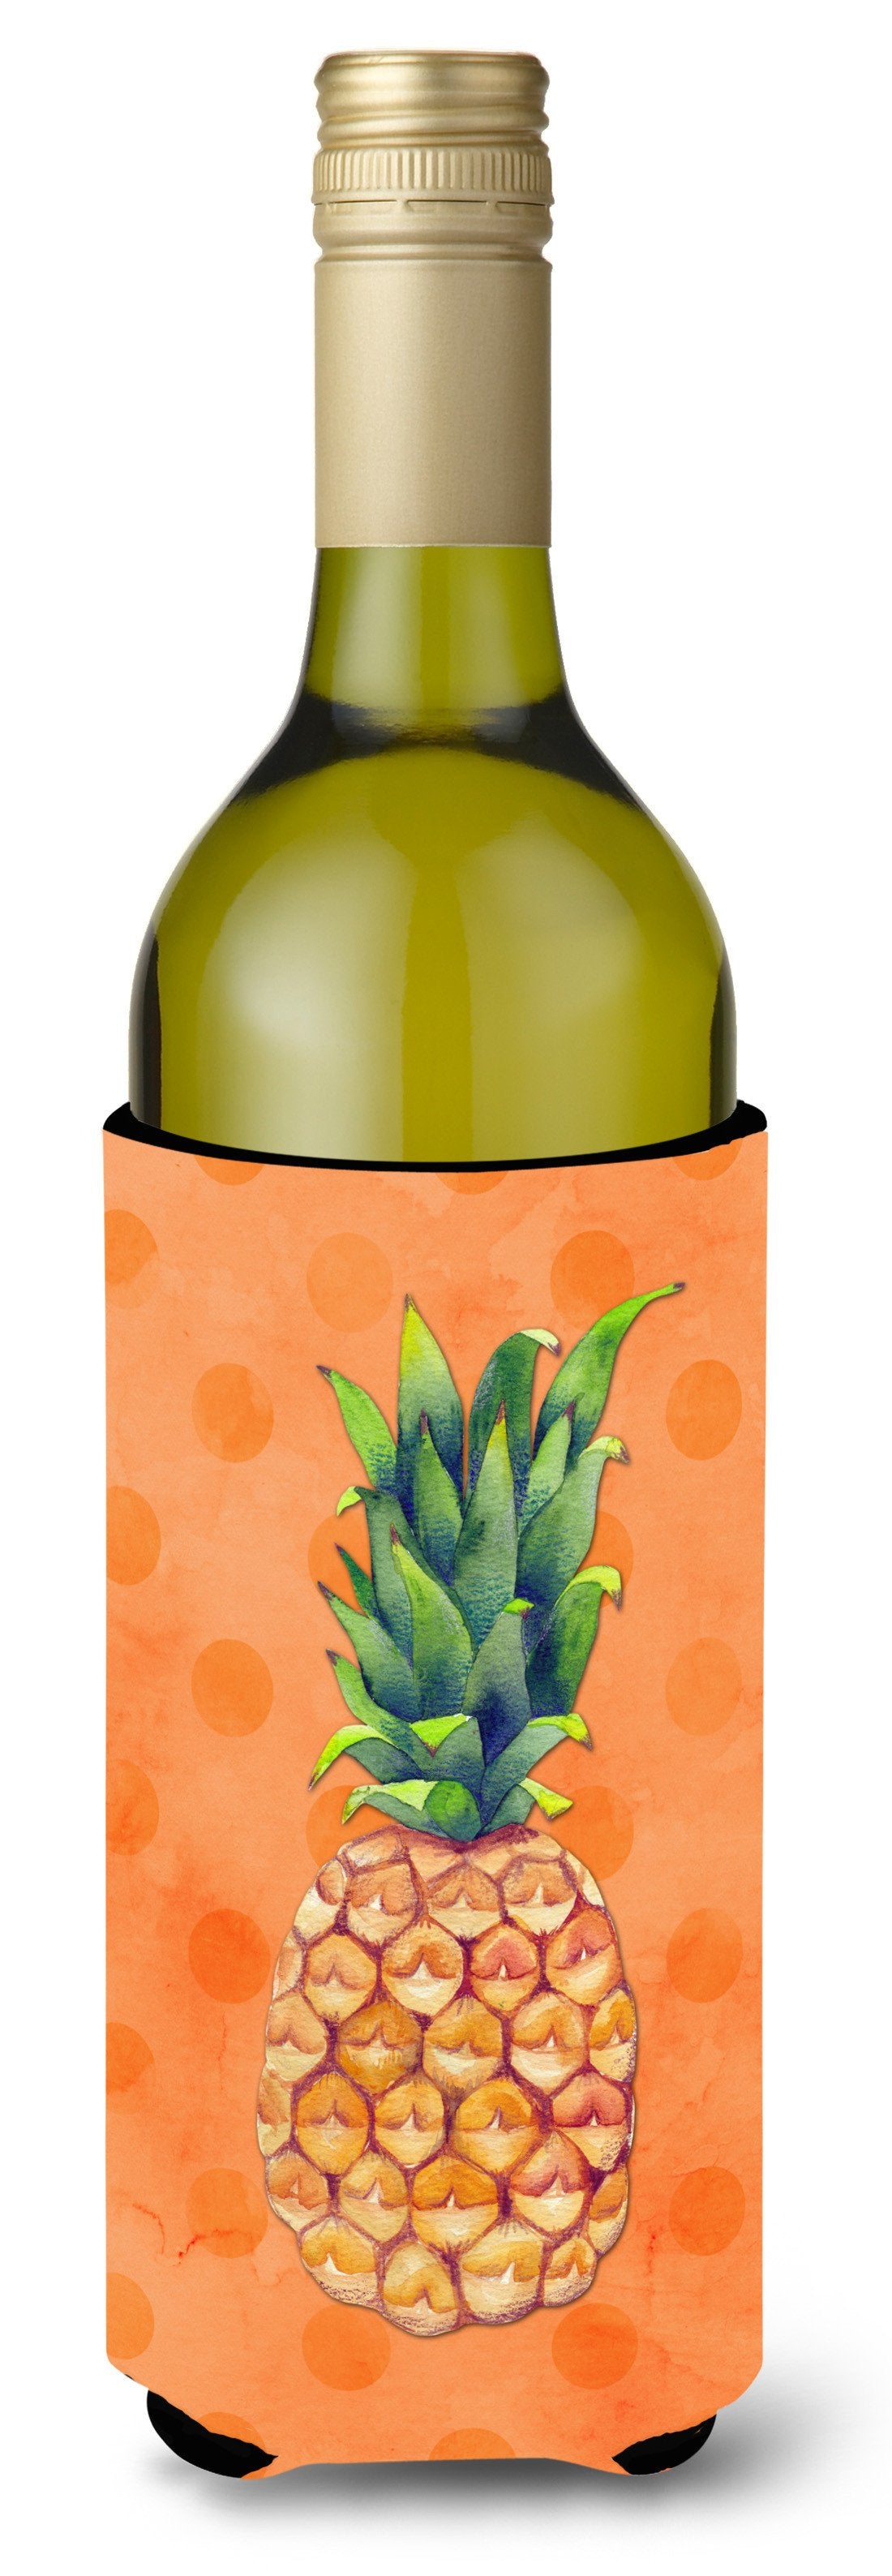 Pineapple Orange Polkadot Wine Bottle Beverge Insulator Hugger BB8193LITERK by Caroline's Treasures